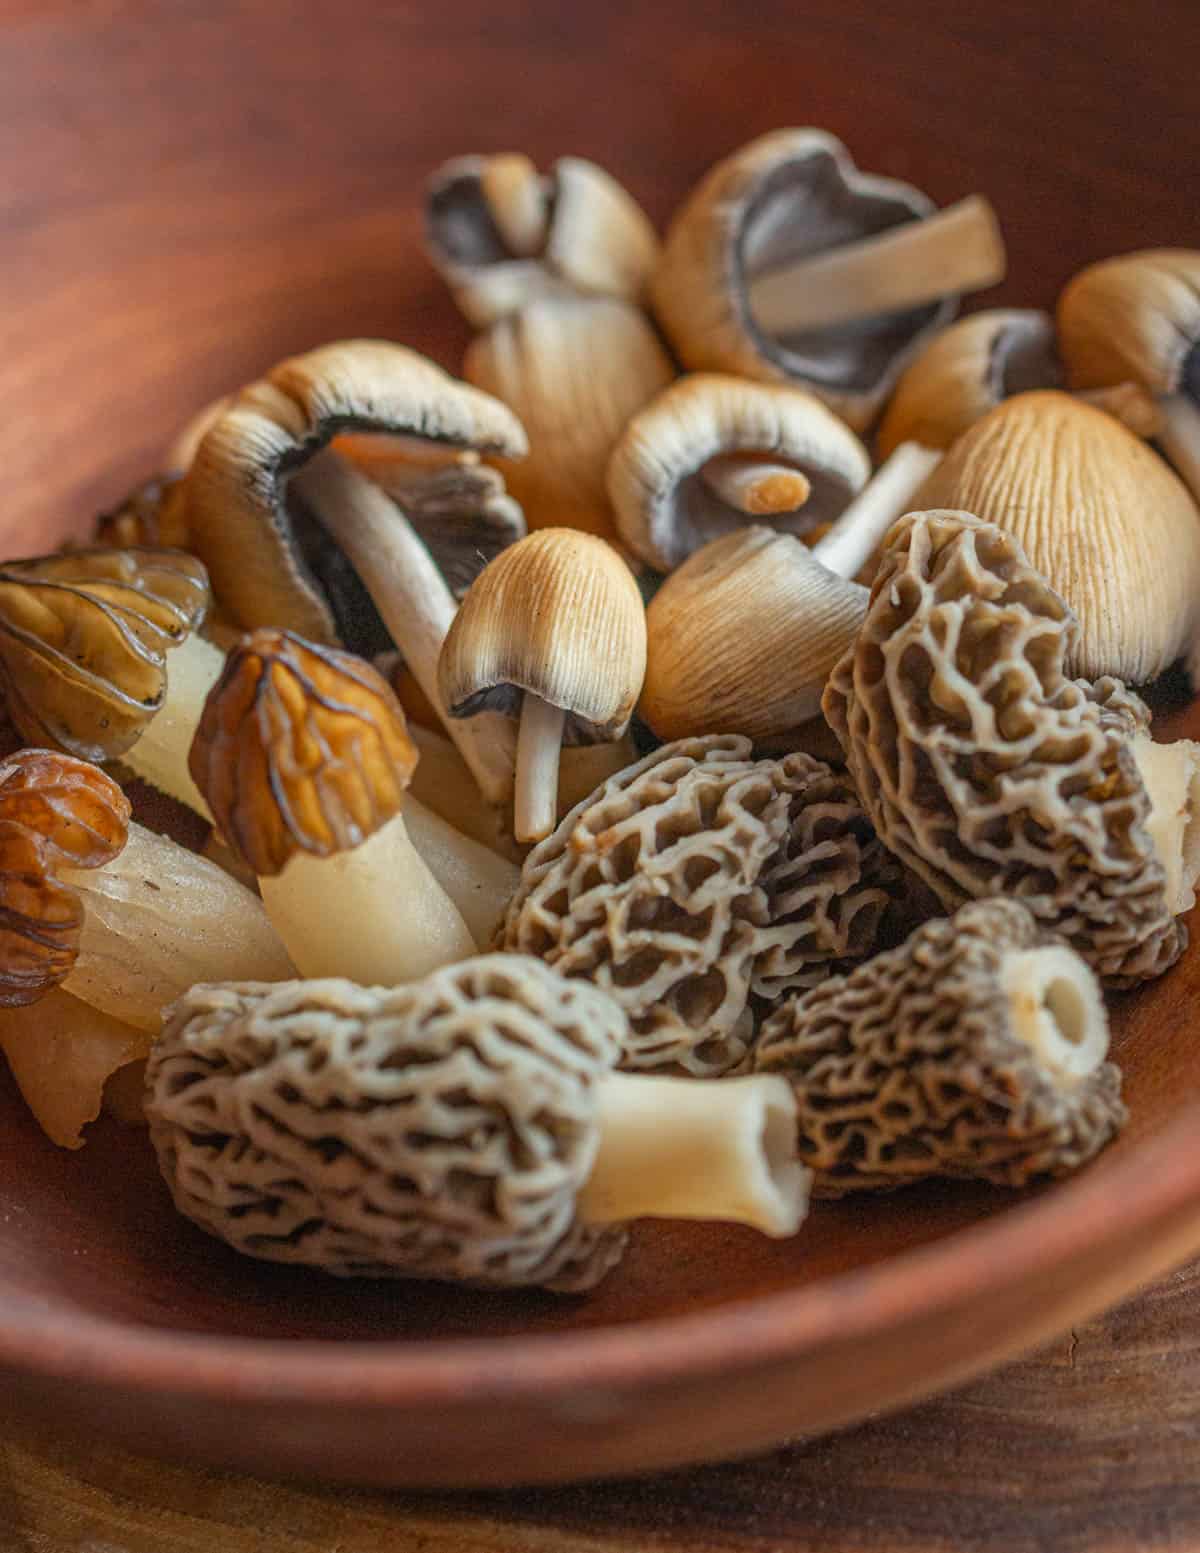 A bowl of edible spring mushrooms: mica caps, half free morels, morels. 